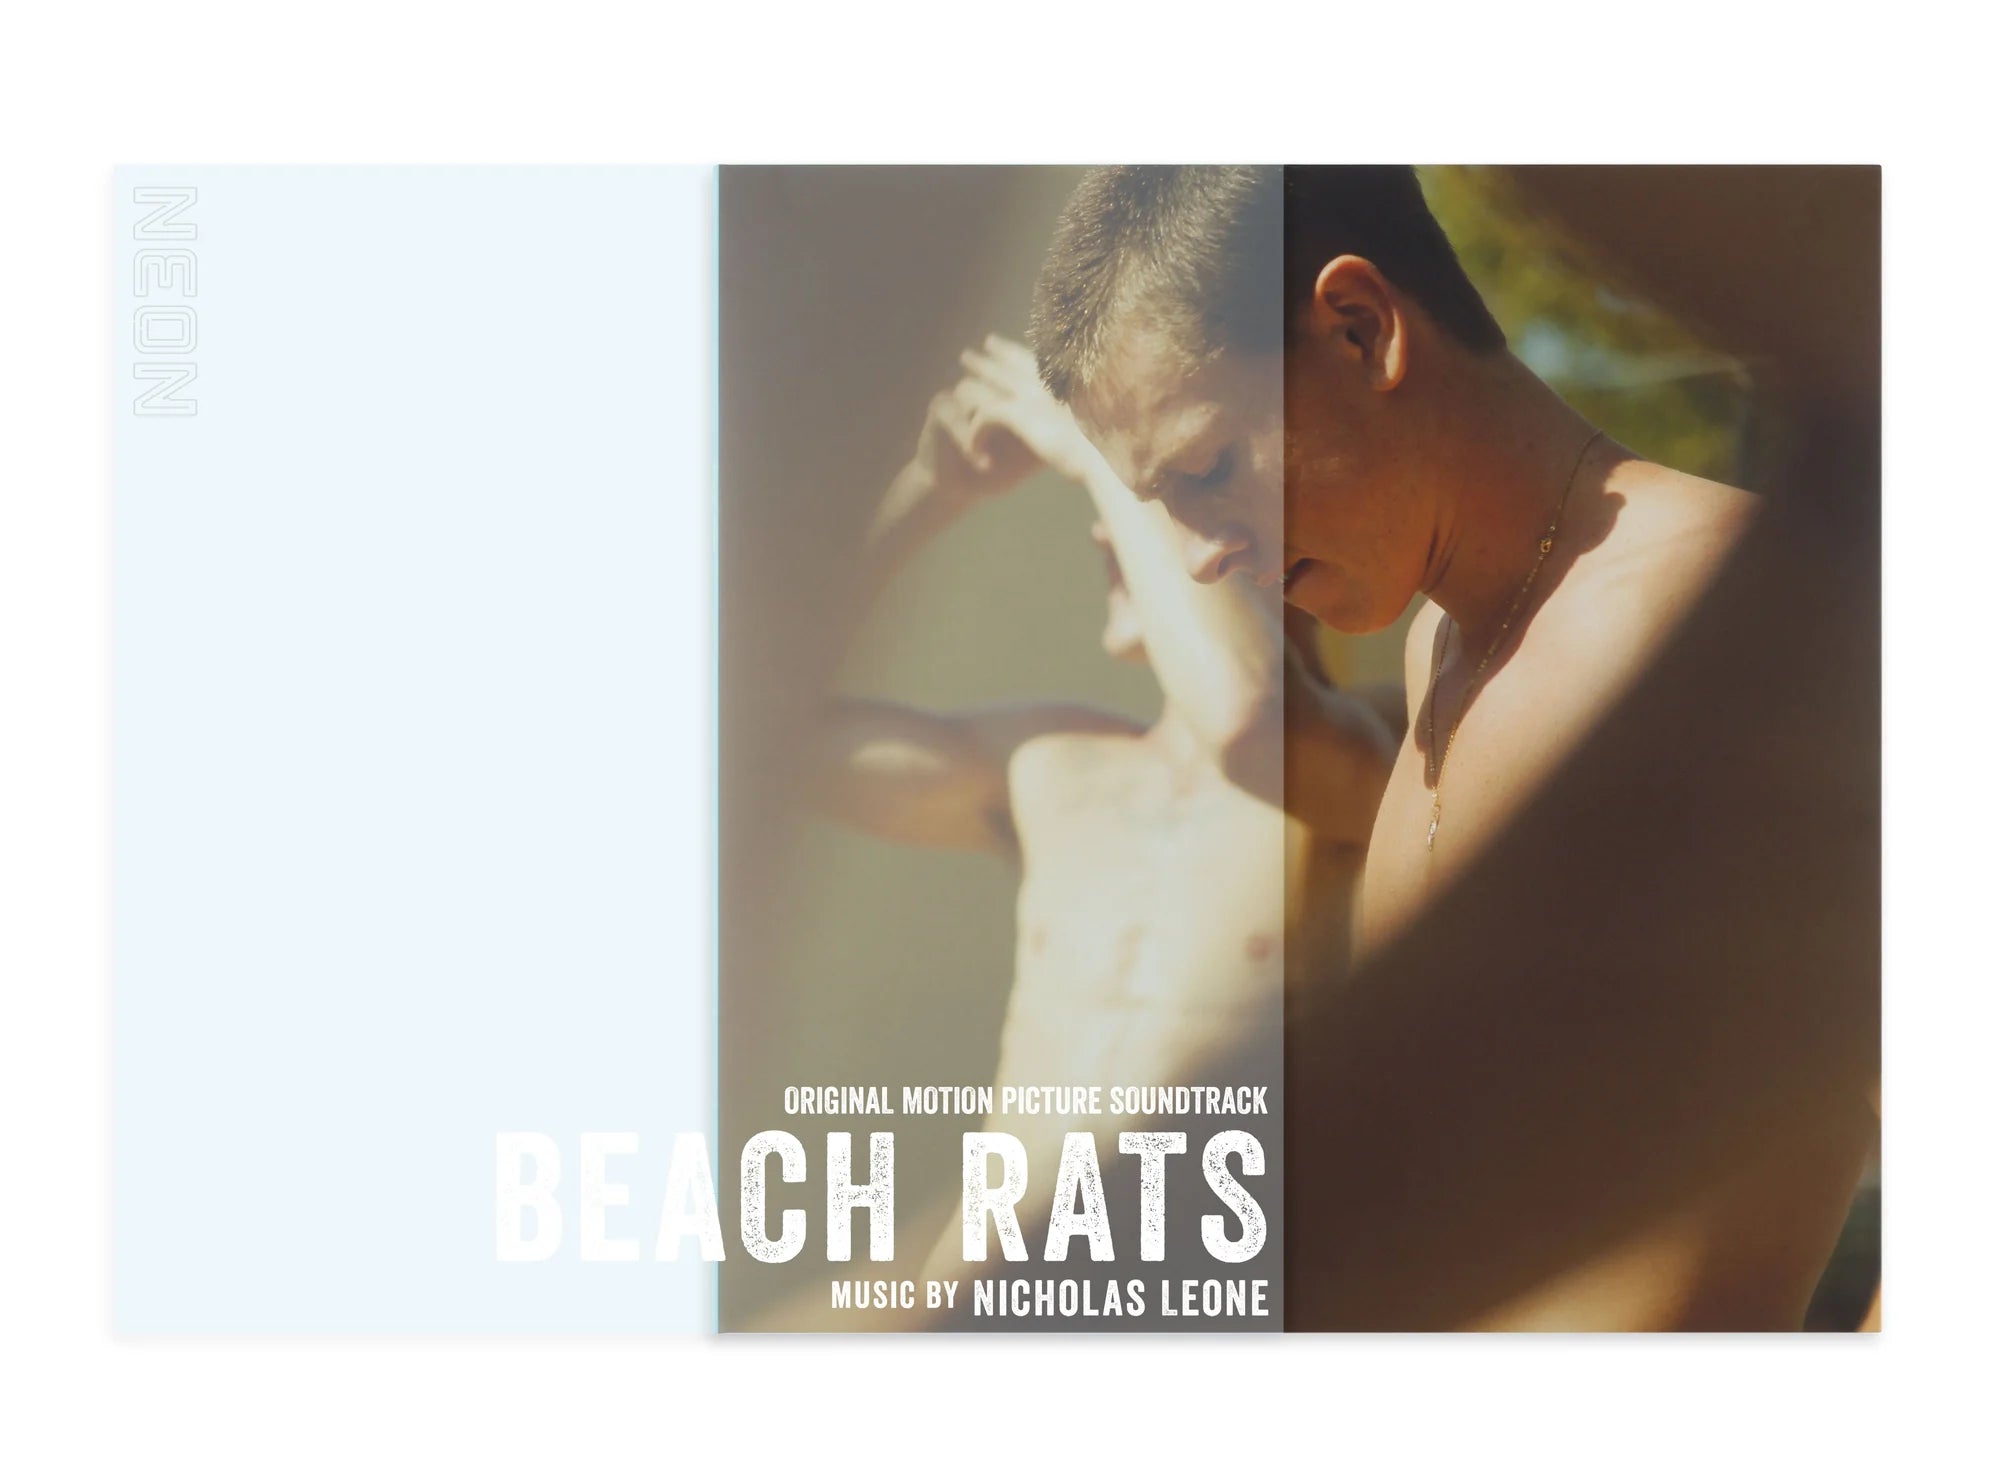 Beach Rats (Original Motion Picture Soundtrack) (Black Vinyl LP)